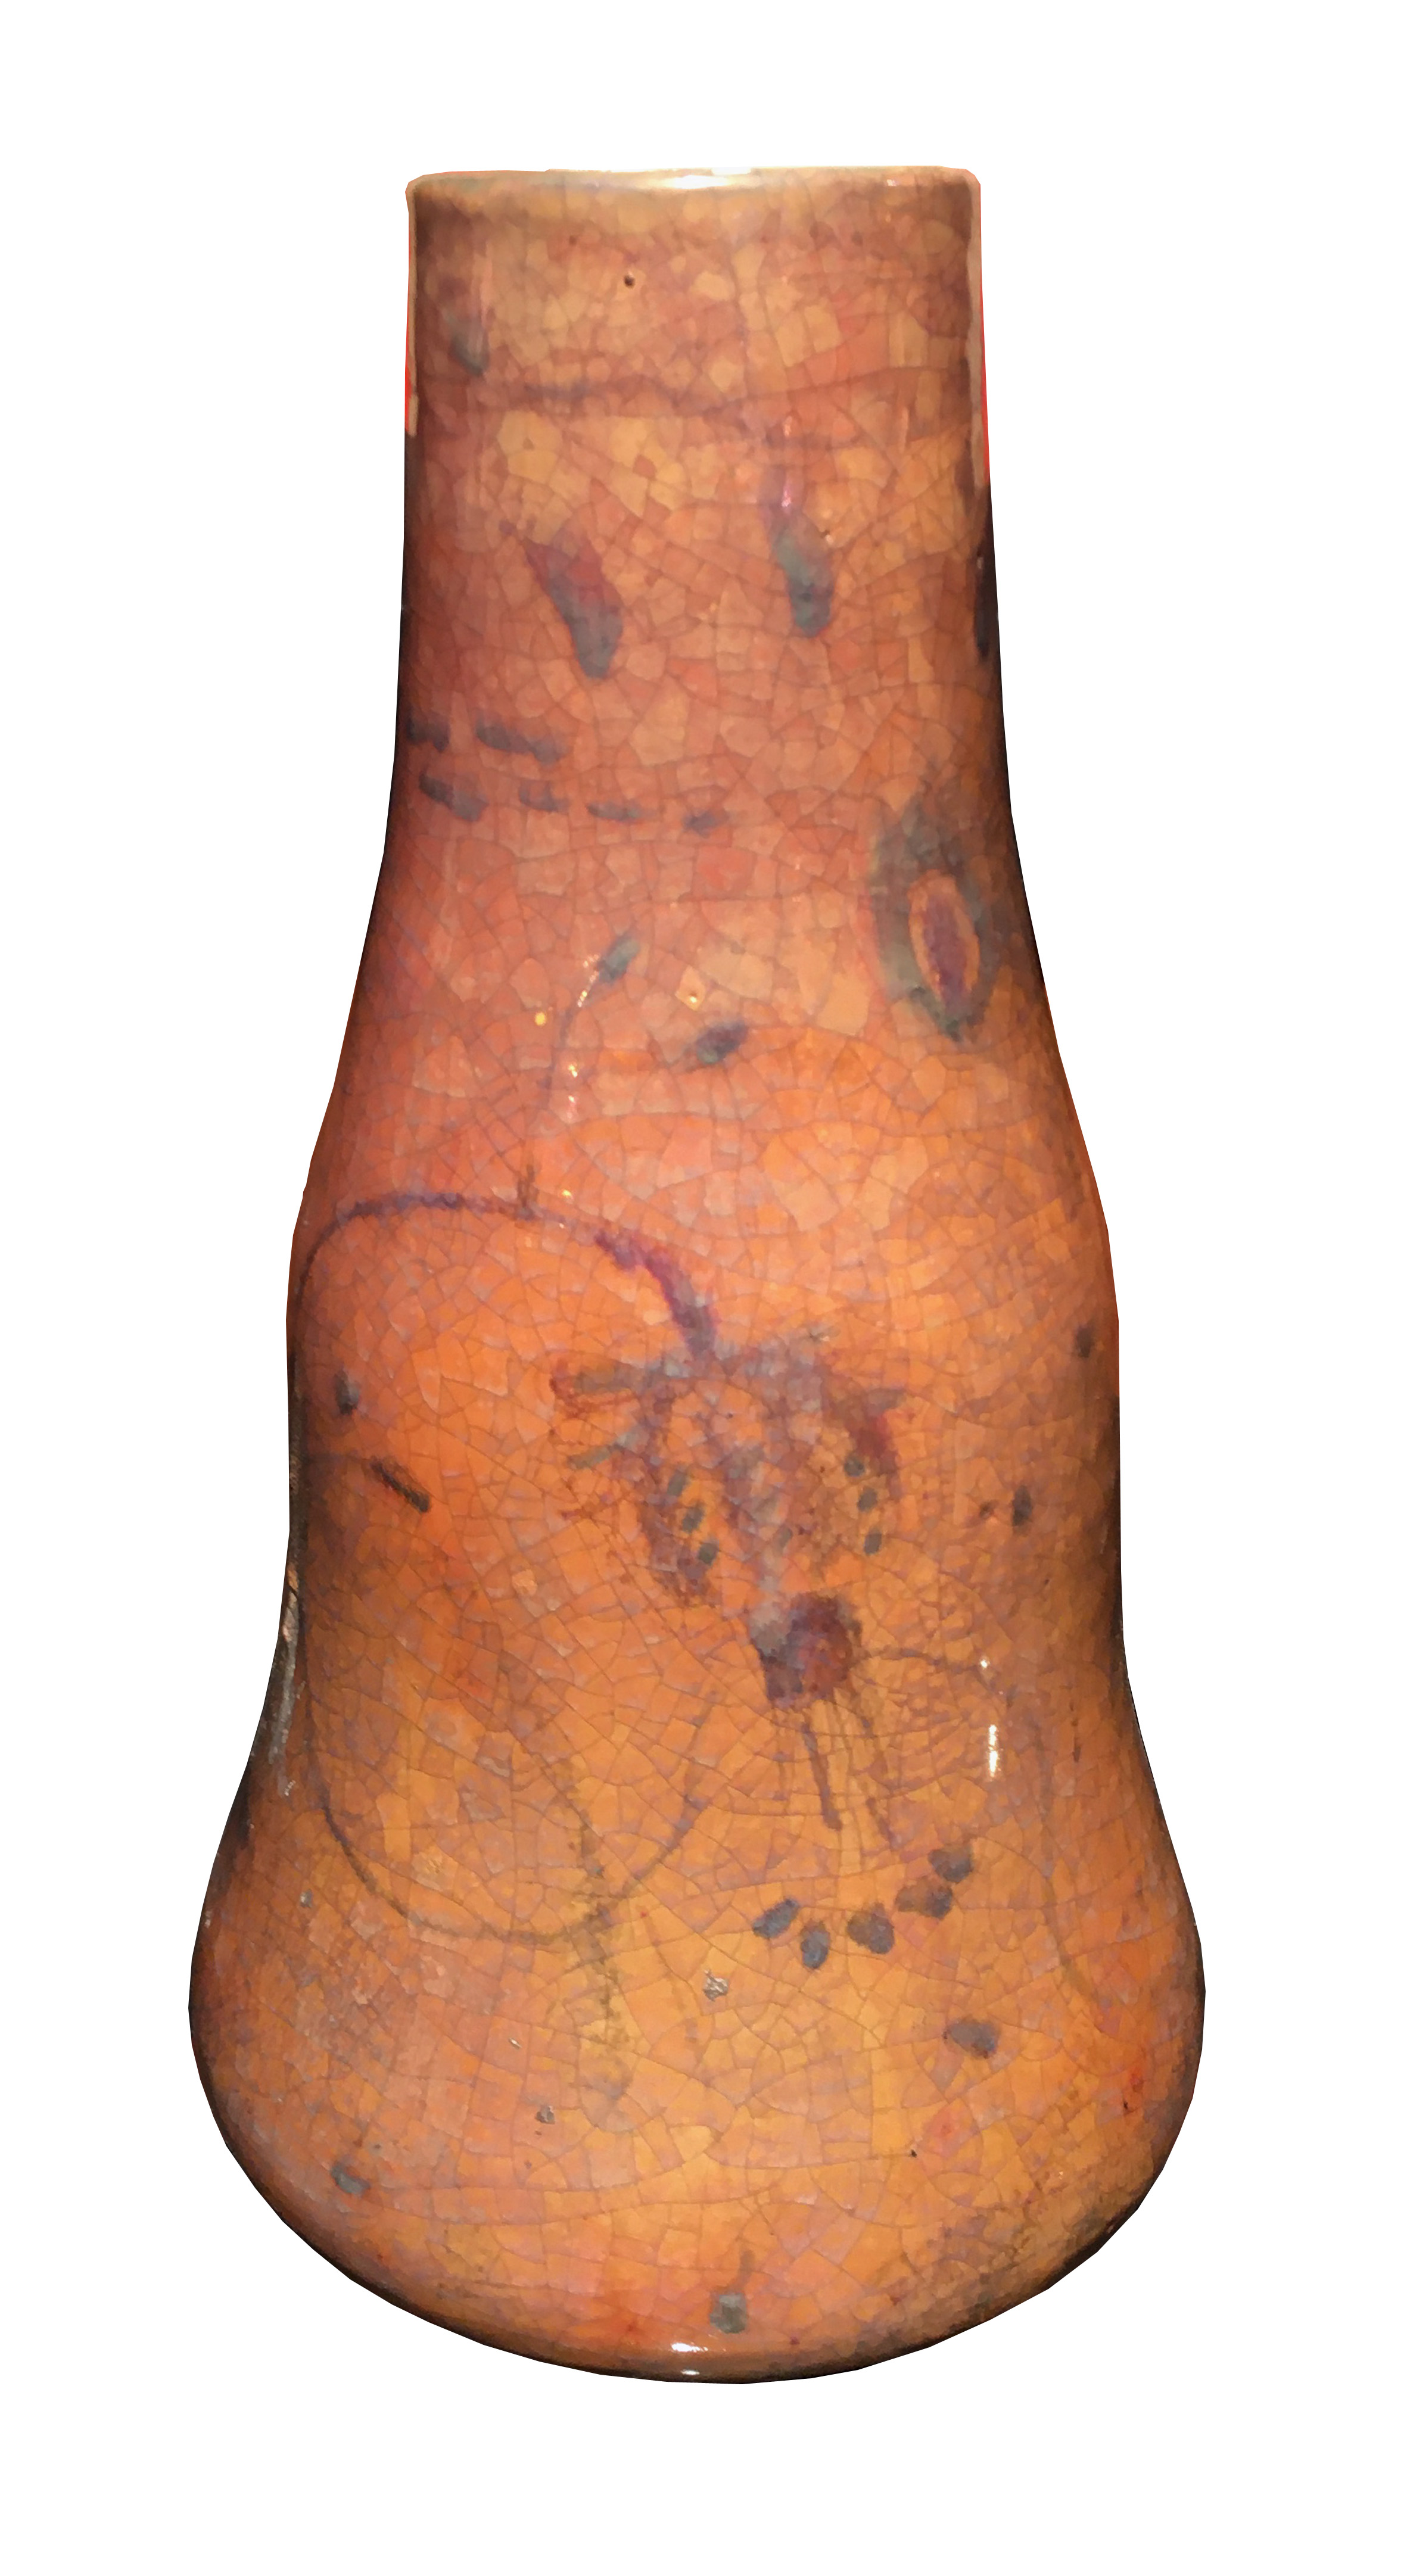 Pietro melandri: Vaso in ceramica Vintage Pera del XX Secolo Pezzo di storia autentico - Robertaebasta® Art Gallery opere d’arte esclusive.